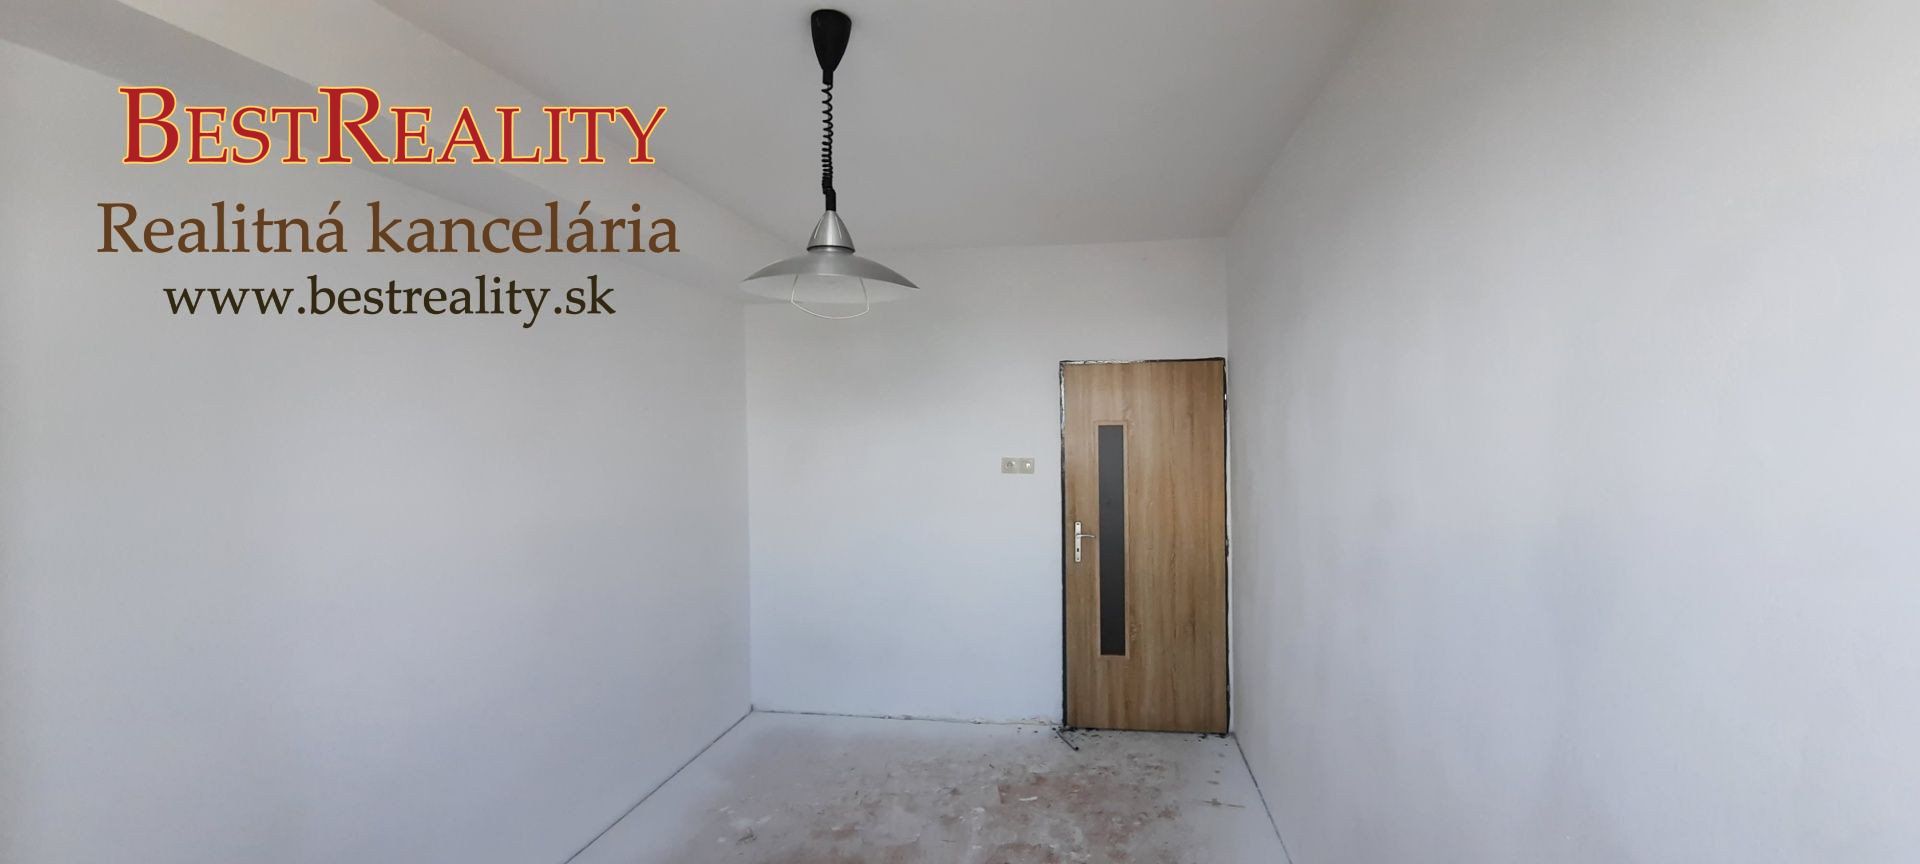 2 Garsónka na predaj, rekonštruovaný byt, DOBRÝ VCHOD, Stavbárska 34, www.bestreality.sk